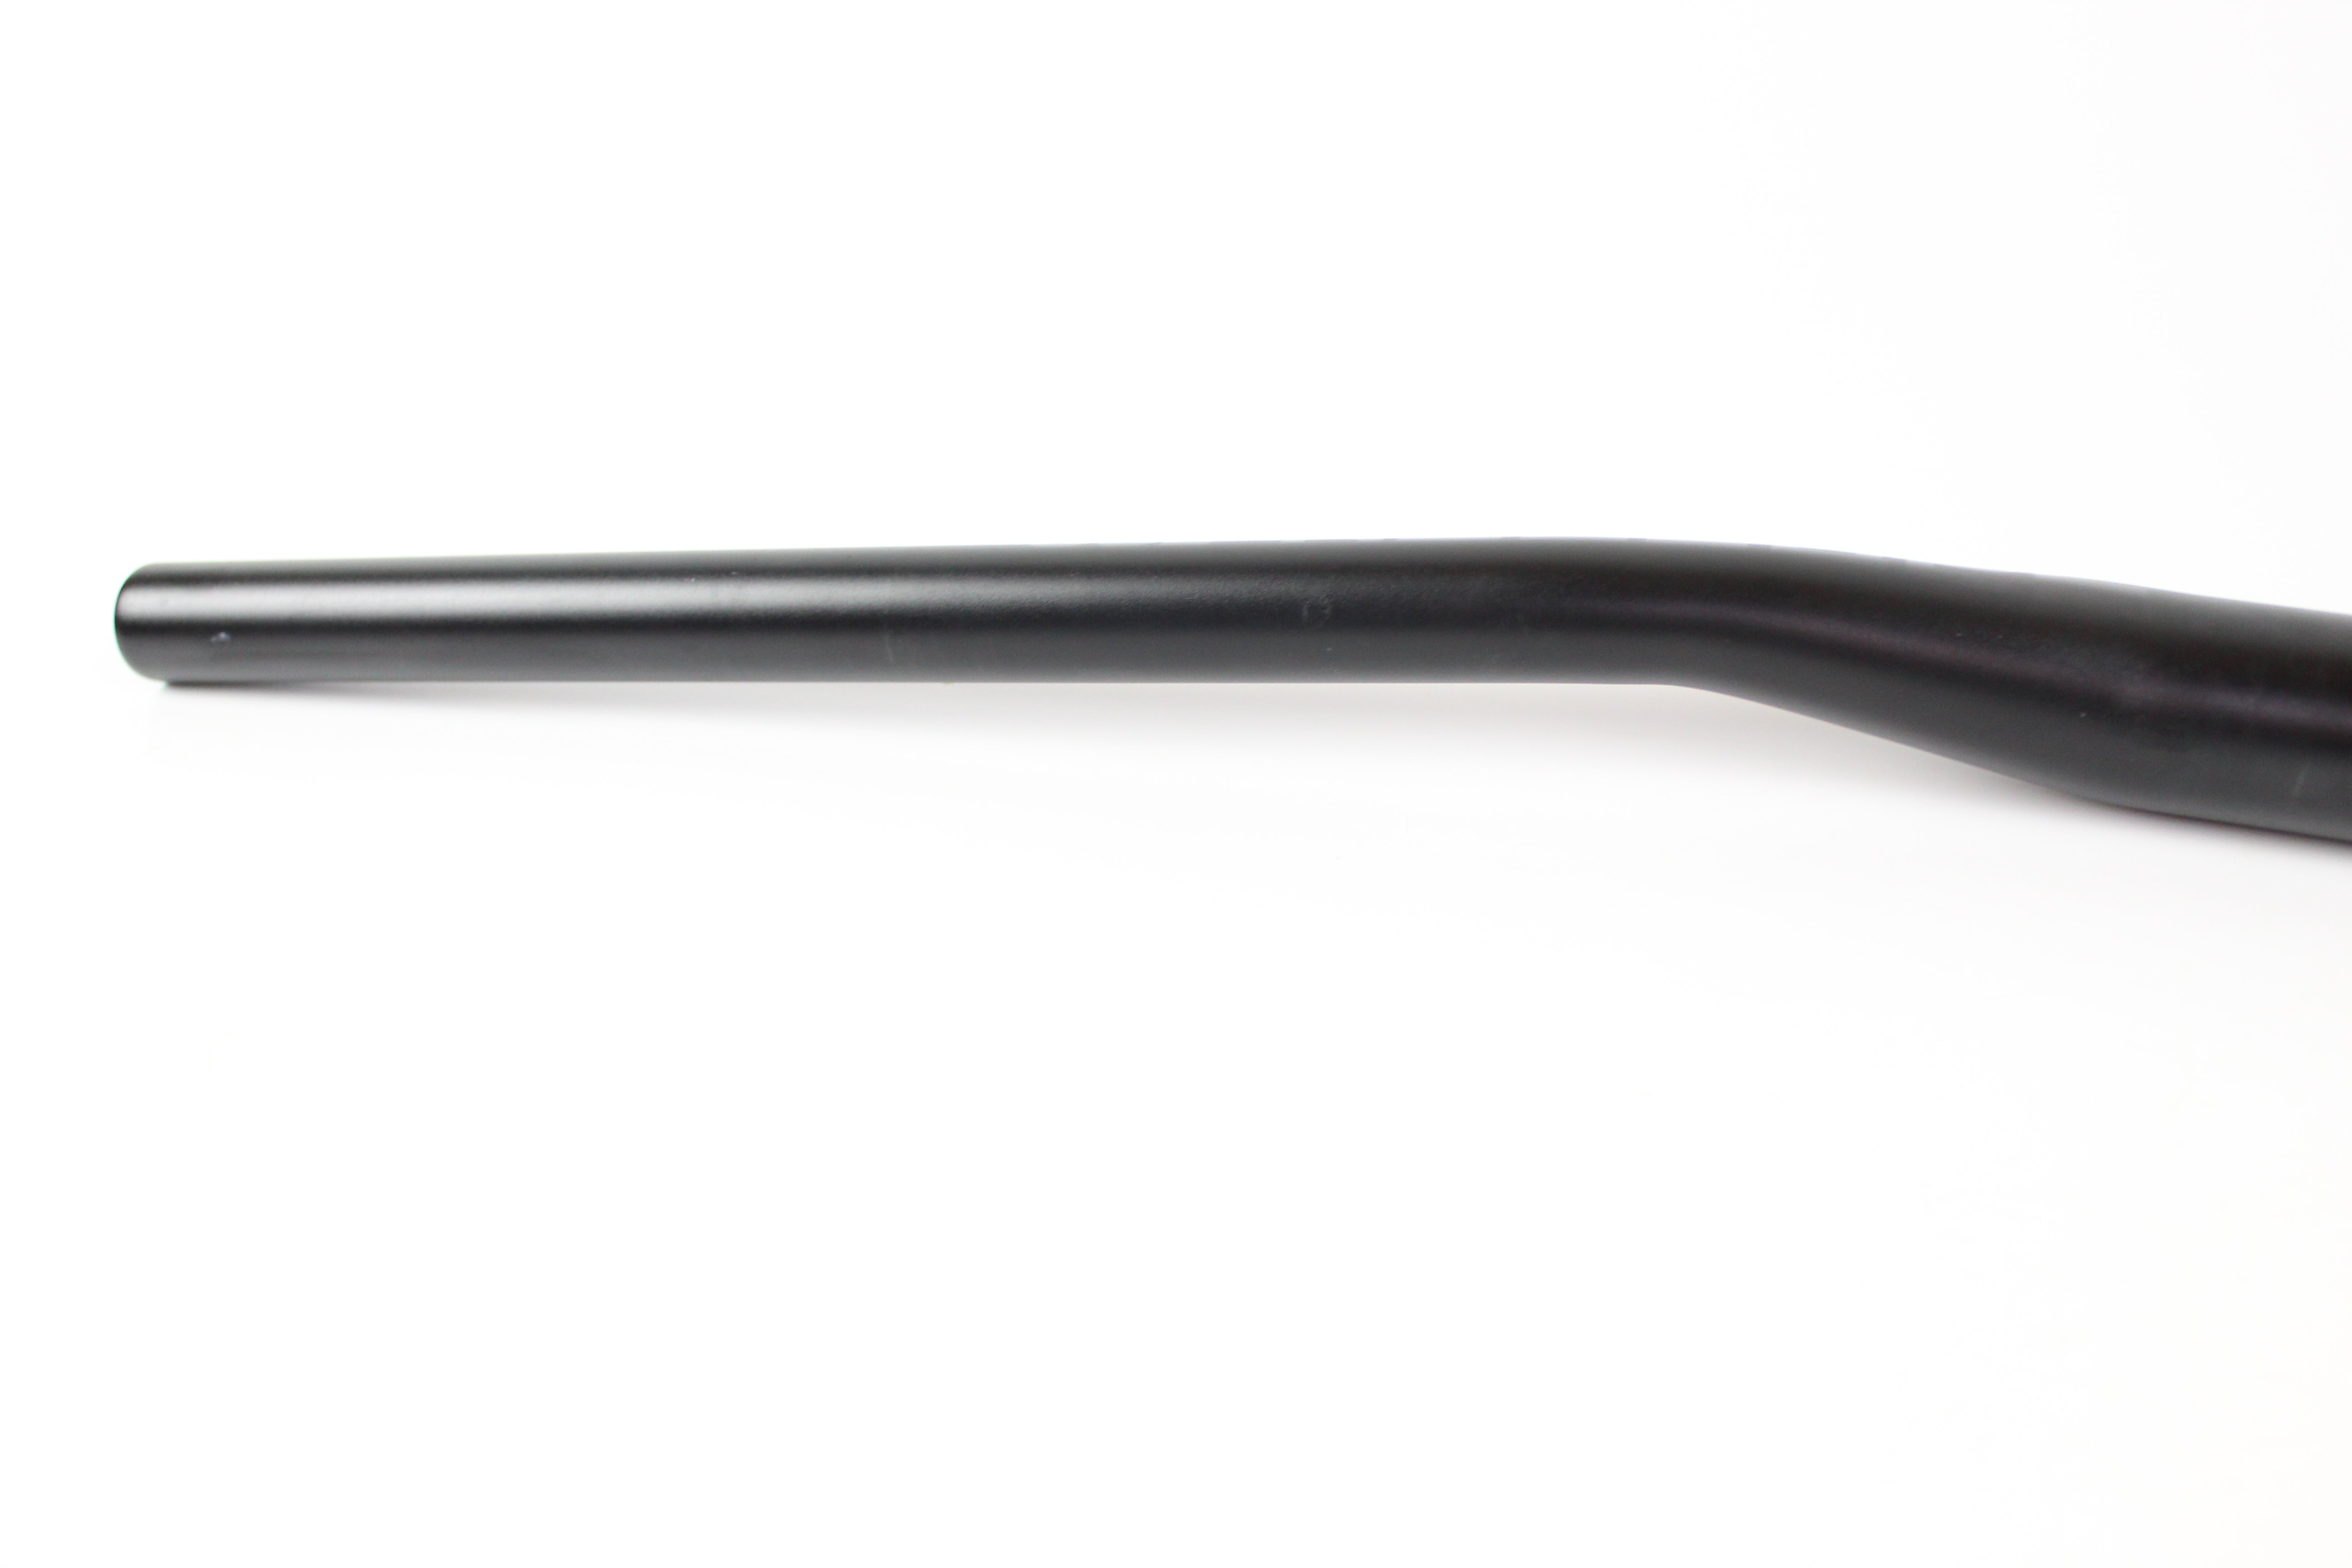 Flat Handlebar - Saracen OS 760mm, 31.8mm , 25mm Rise - Grade A